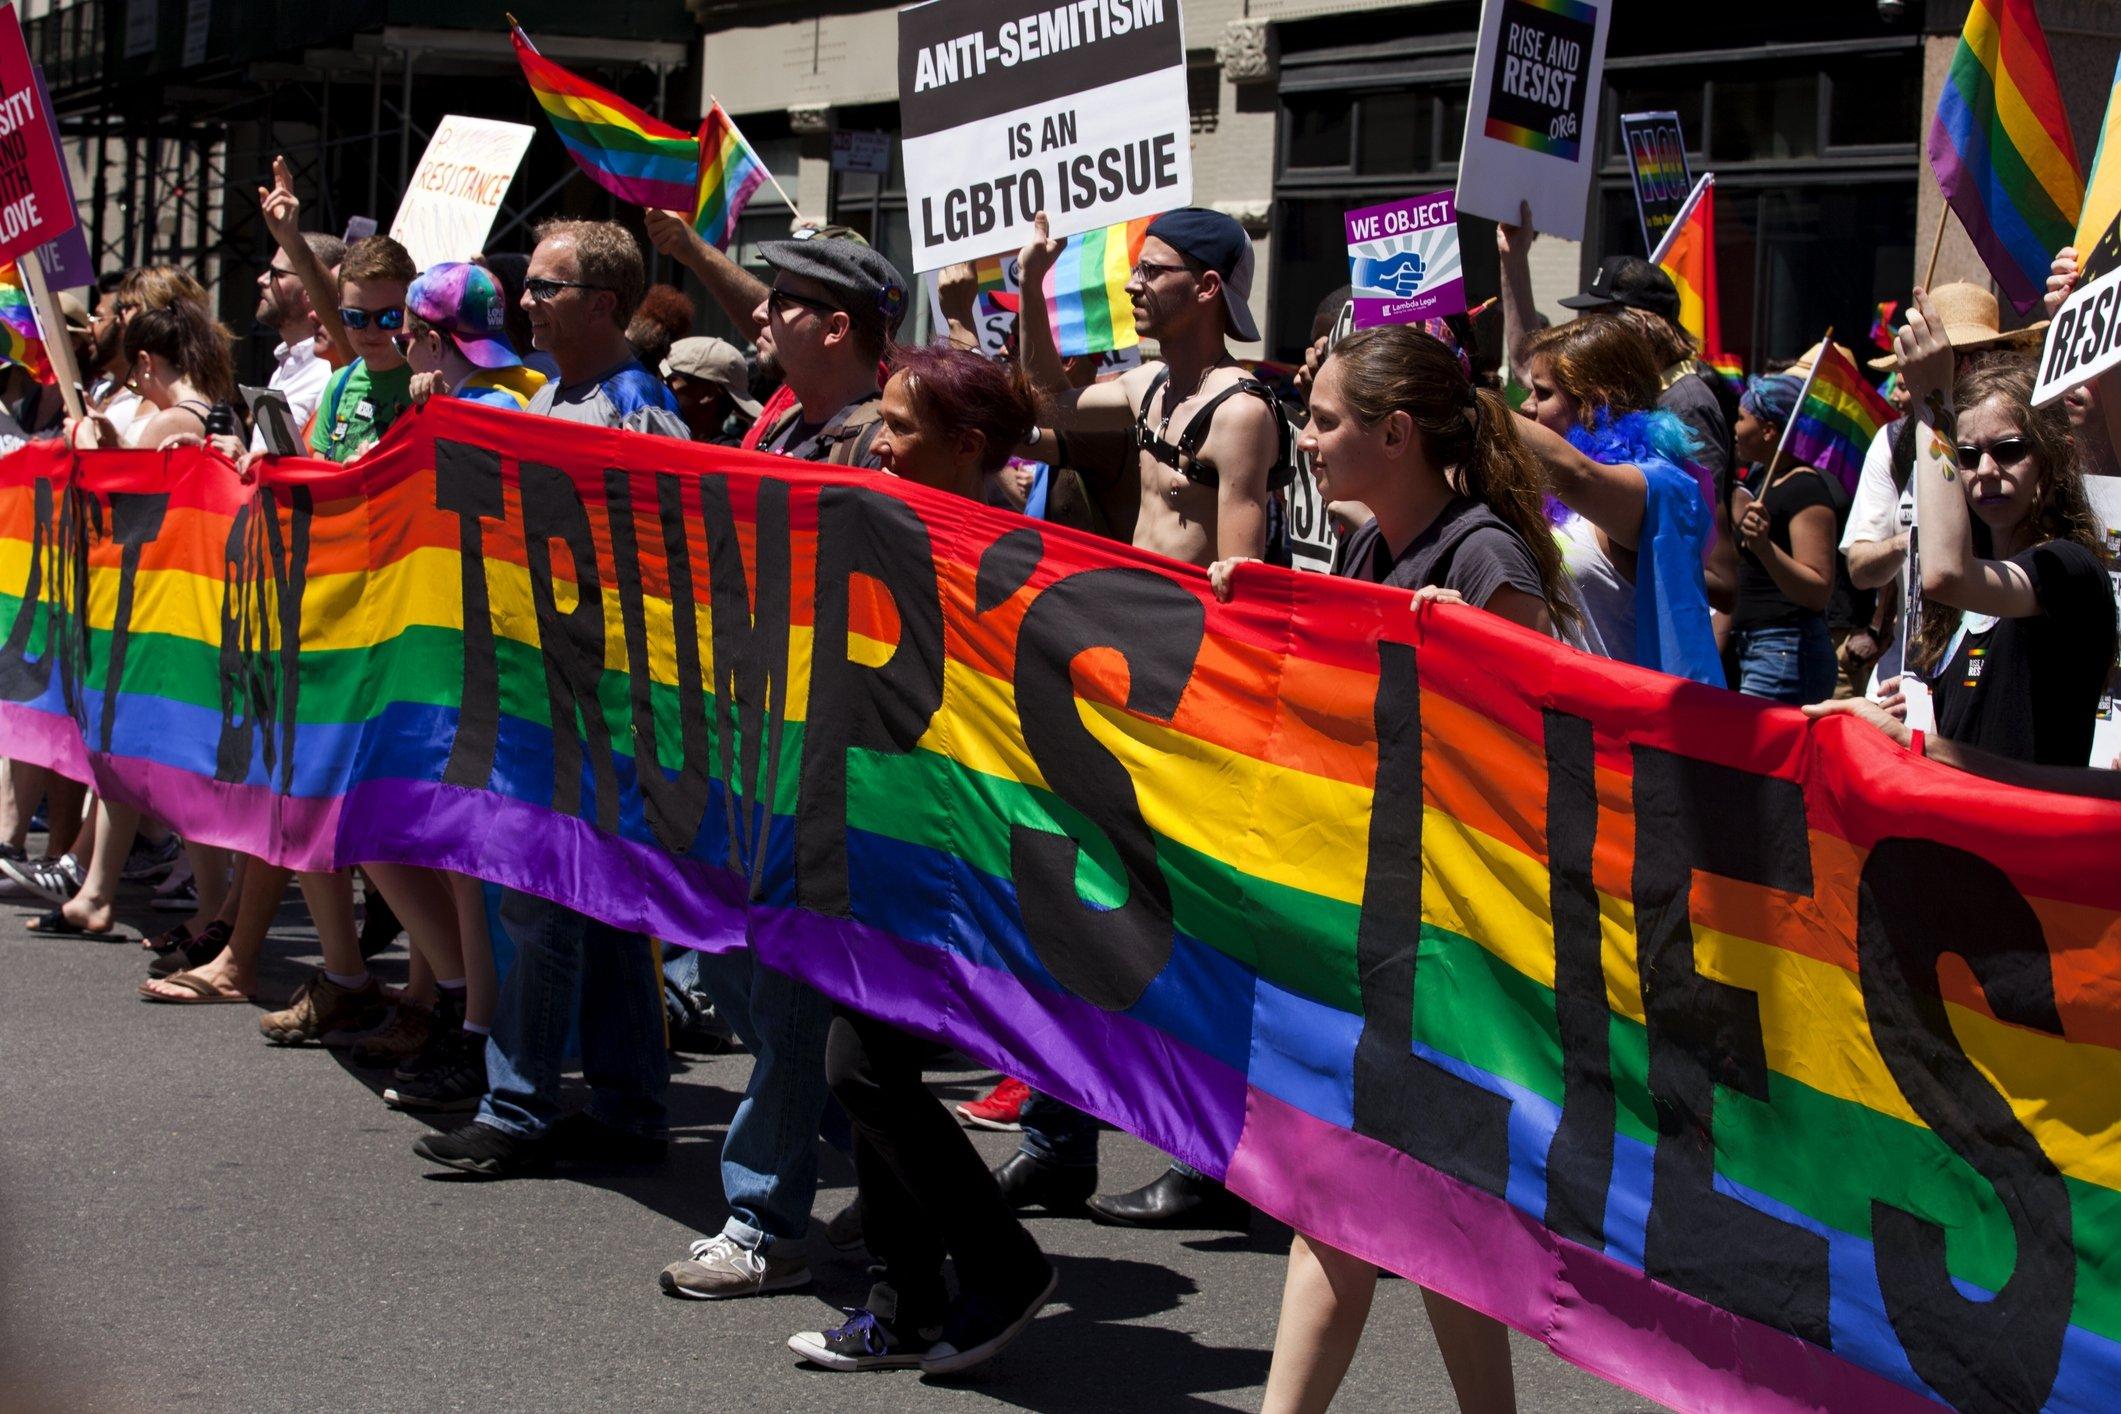 Quyền LGBTQ ở Mỹ đang tăng lên sau khi diễn ra các cuộc biểu tình